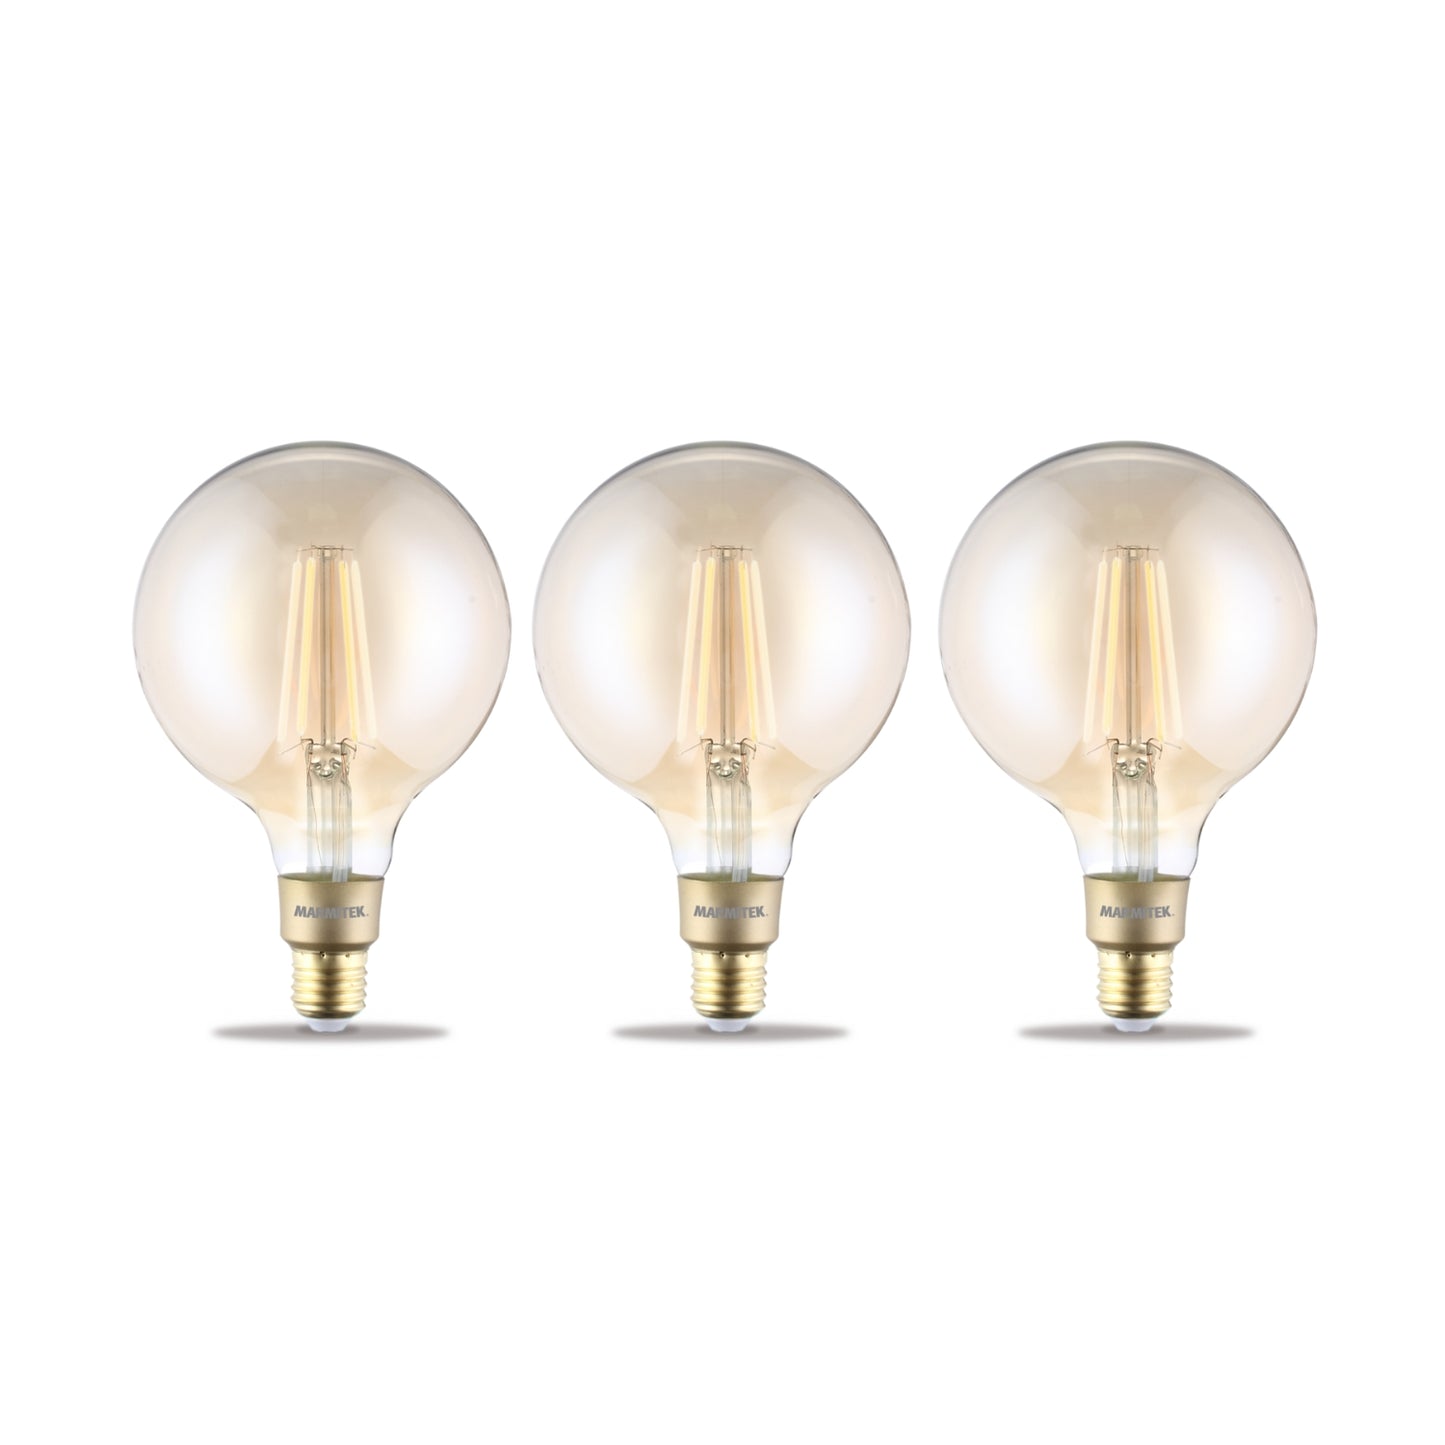 Glow XXLI - Filament bulb - E27 - Control via app